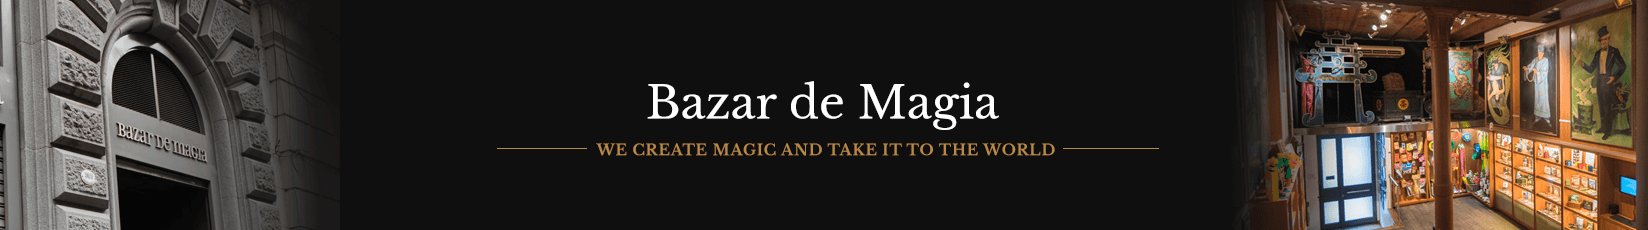 Bazar de Magia - About us